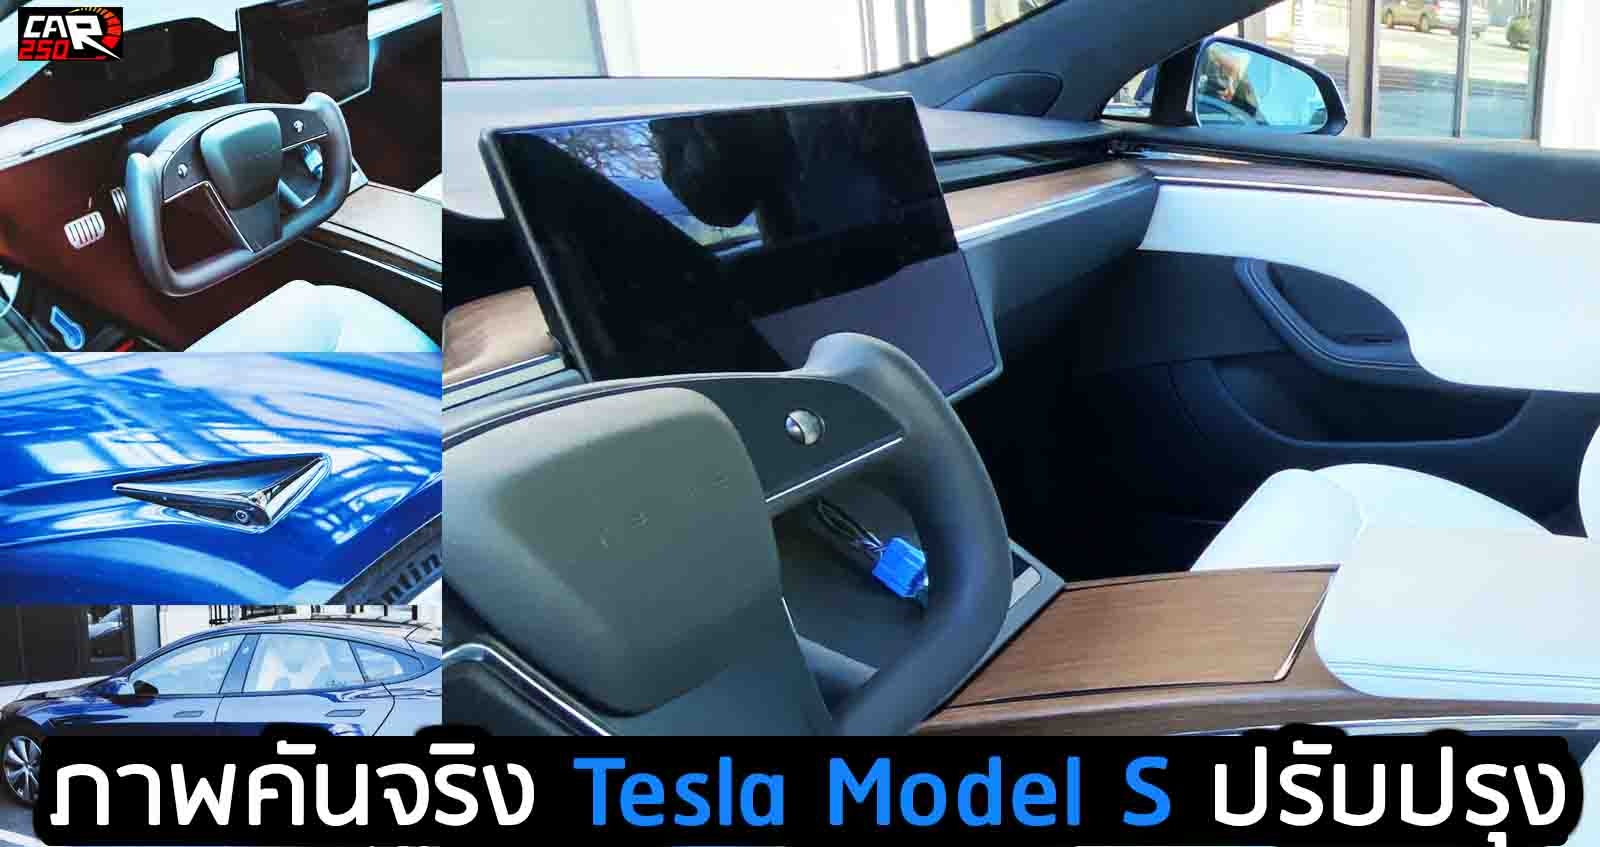 ภาพคันจริง Tesla Model S เน้นปรับปรุงภายในใหม่ ราคา 3.7 ลบ. ในจีน